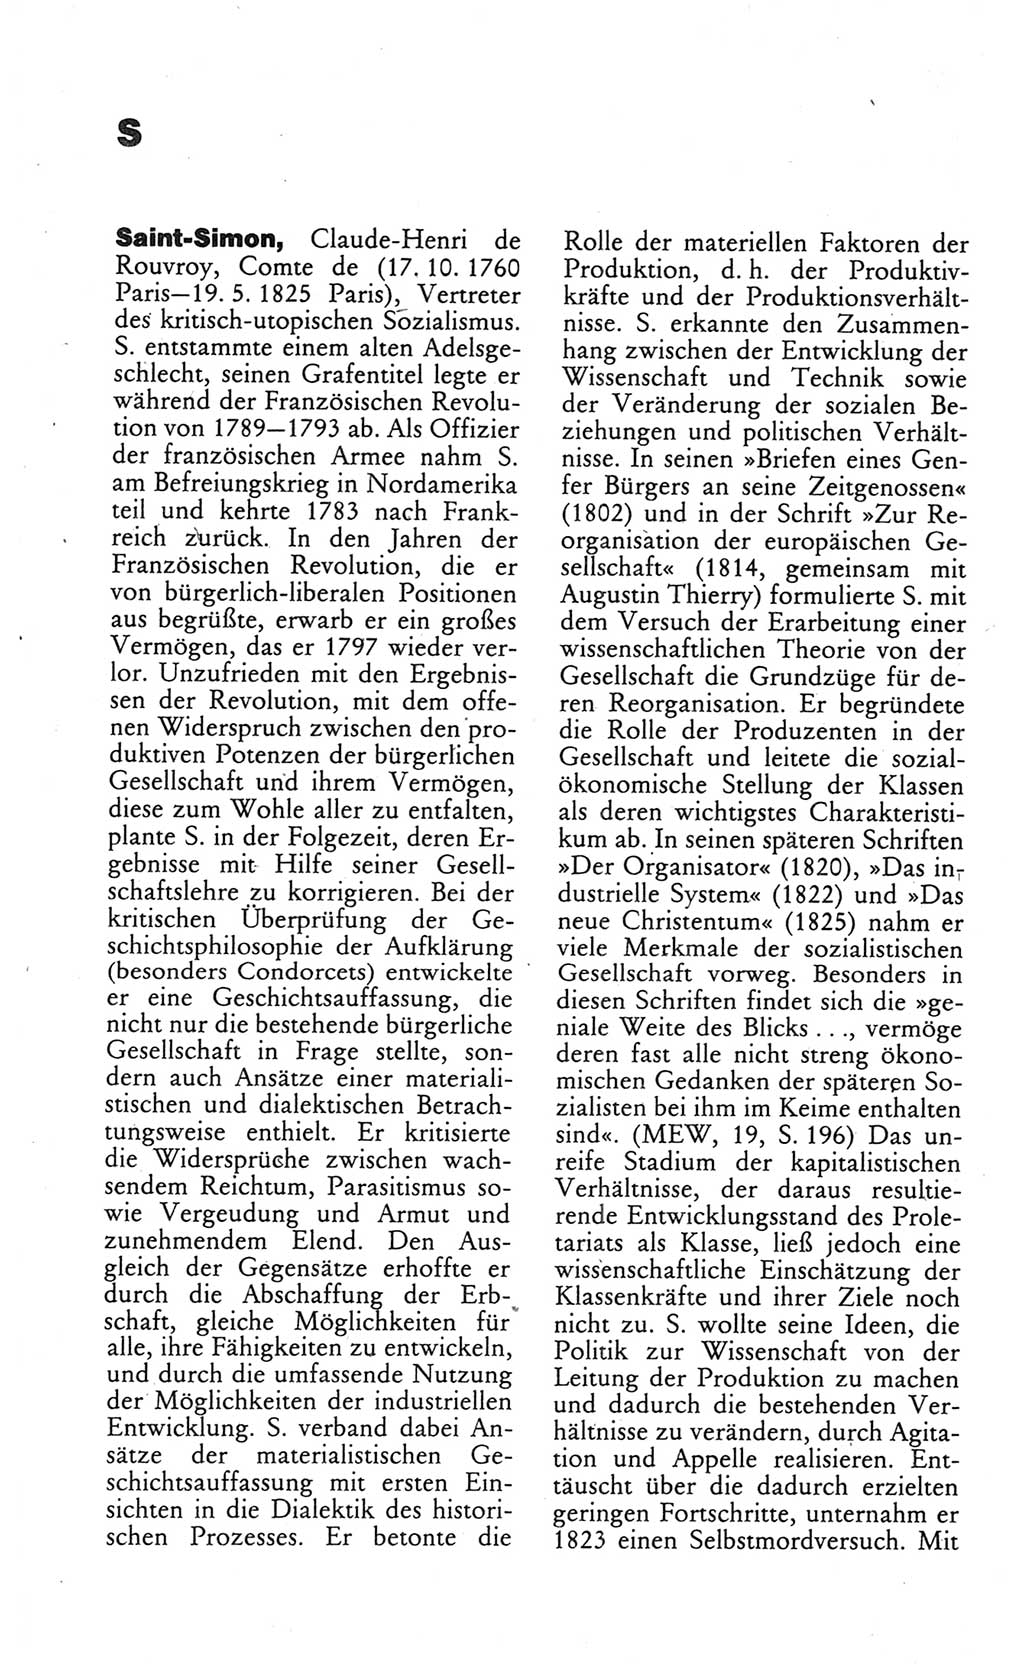 Wörterbuch des wissenschaftlichen Kommunismus [Deutsche Demokratische Republik (DDR)] 1984, Seite 326 (Wb. wiss. Komm. DDR 1984, S. 326)